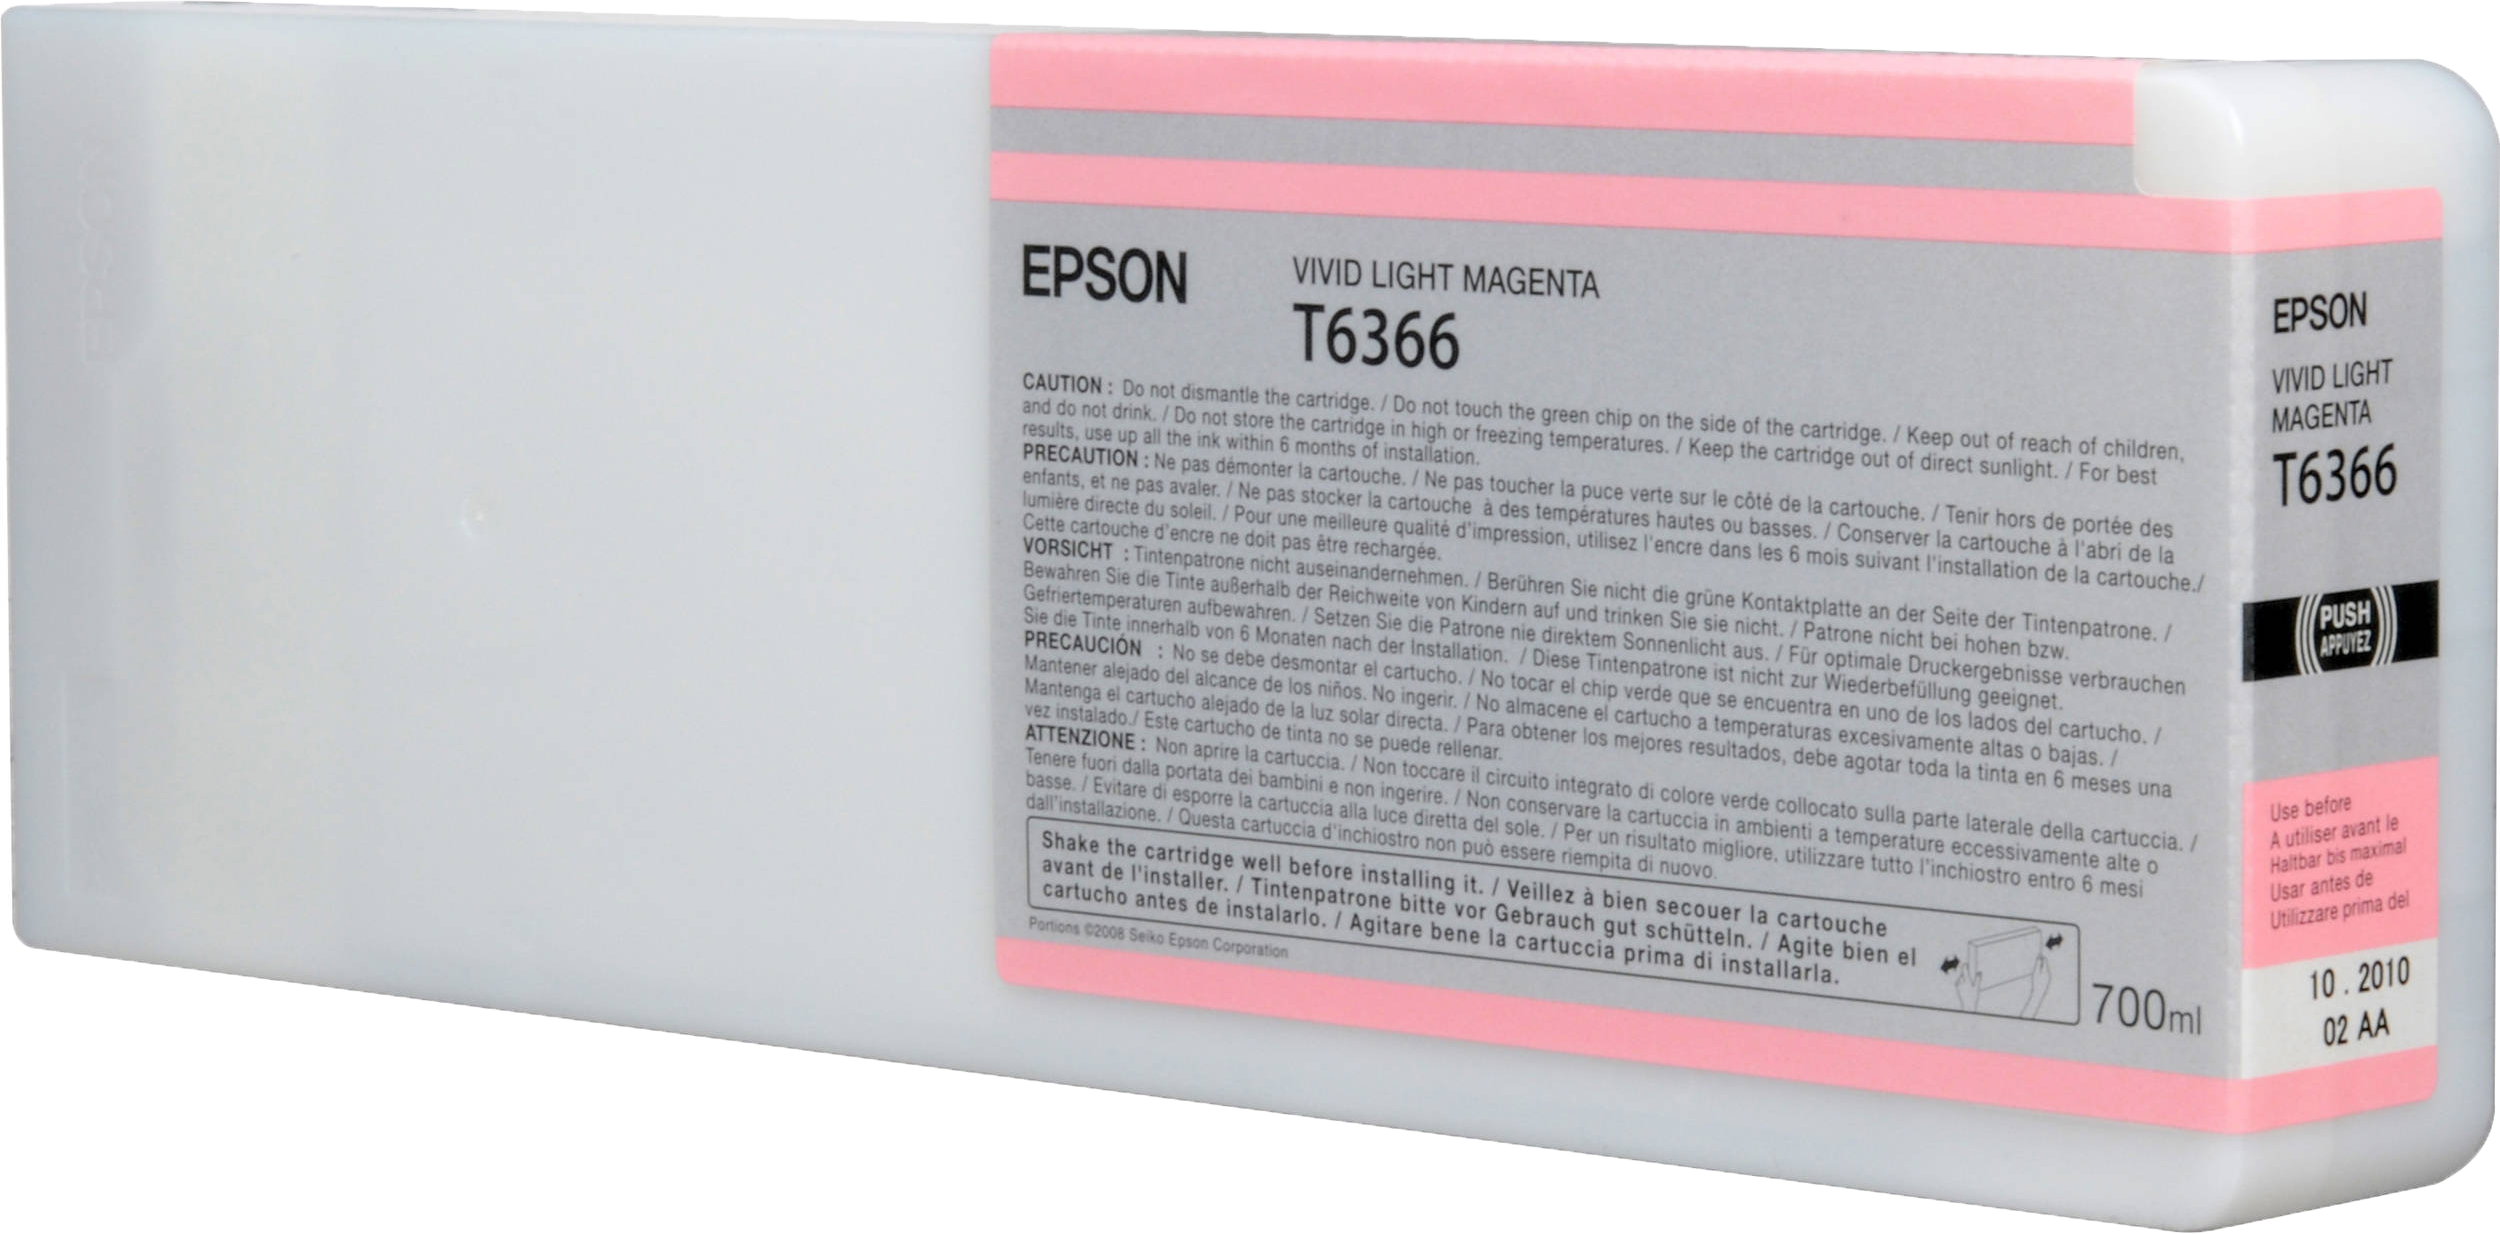 Epson T6366 licht magenta